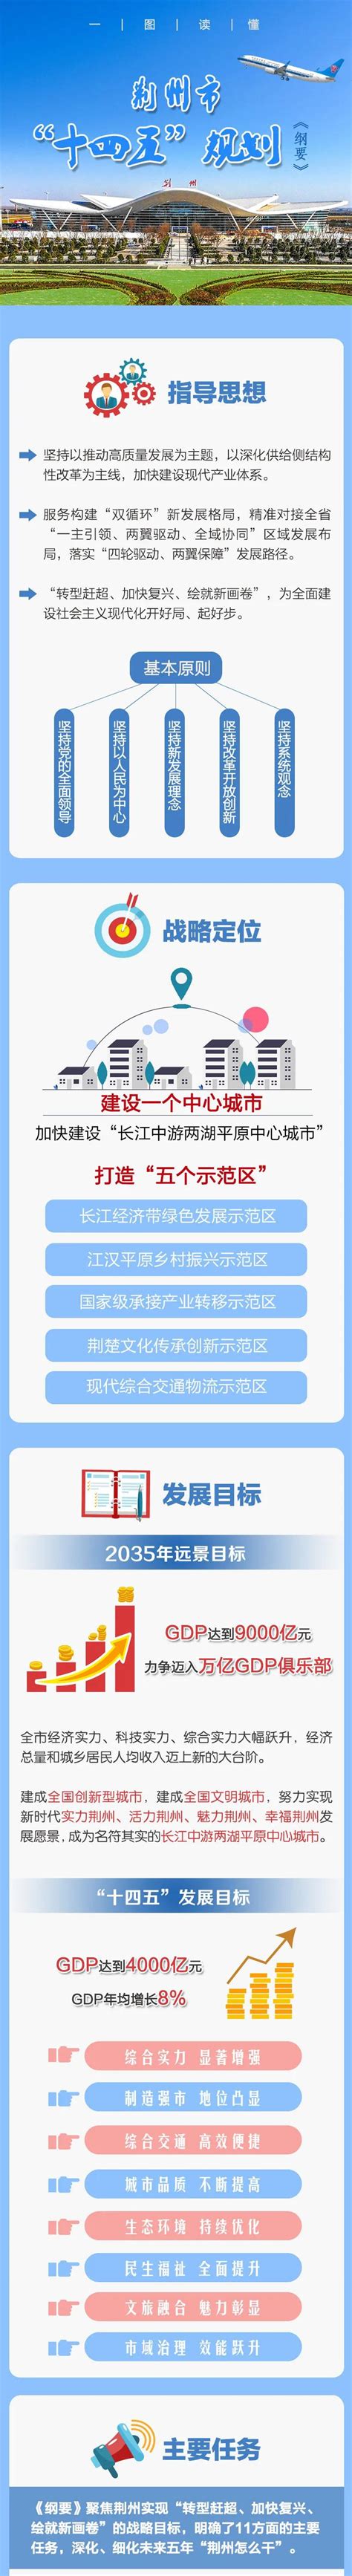 一图读懂荆州市“十四五”规划《纲要》 - 荆州市发展和改革委员会